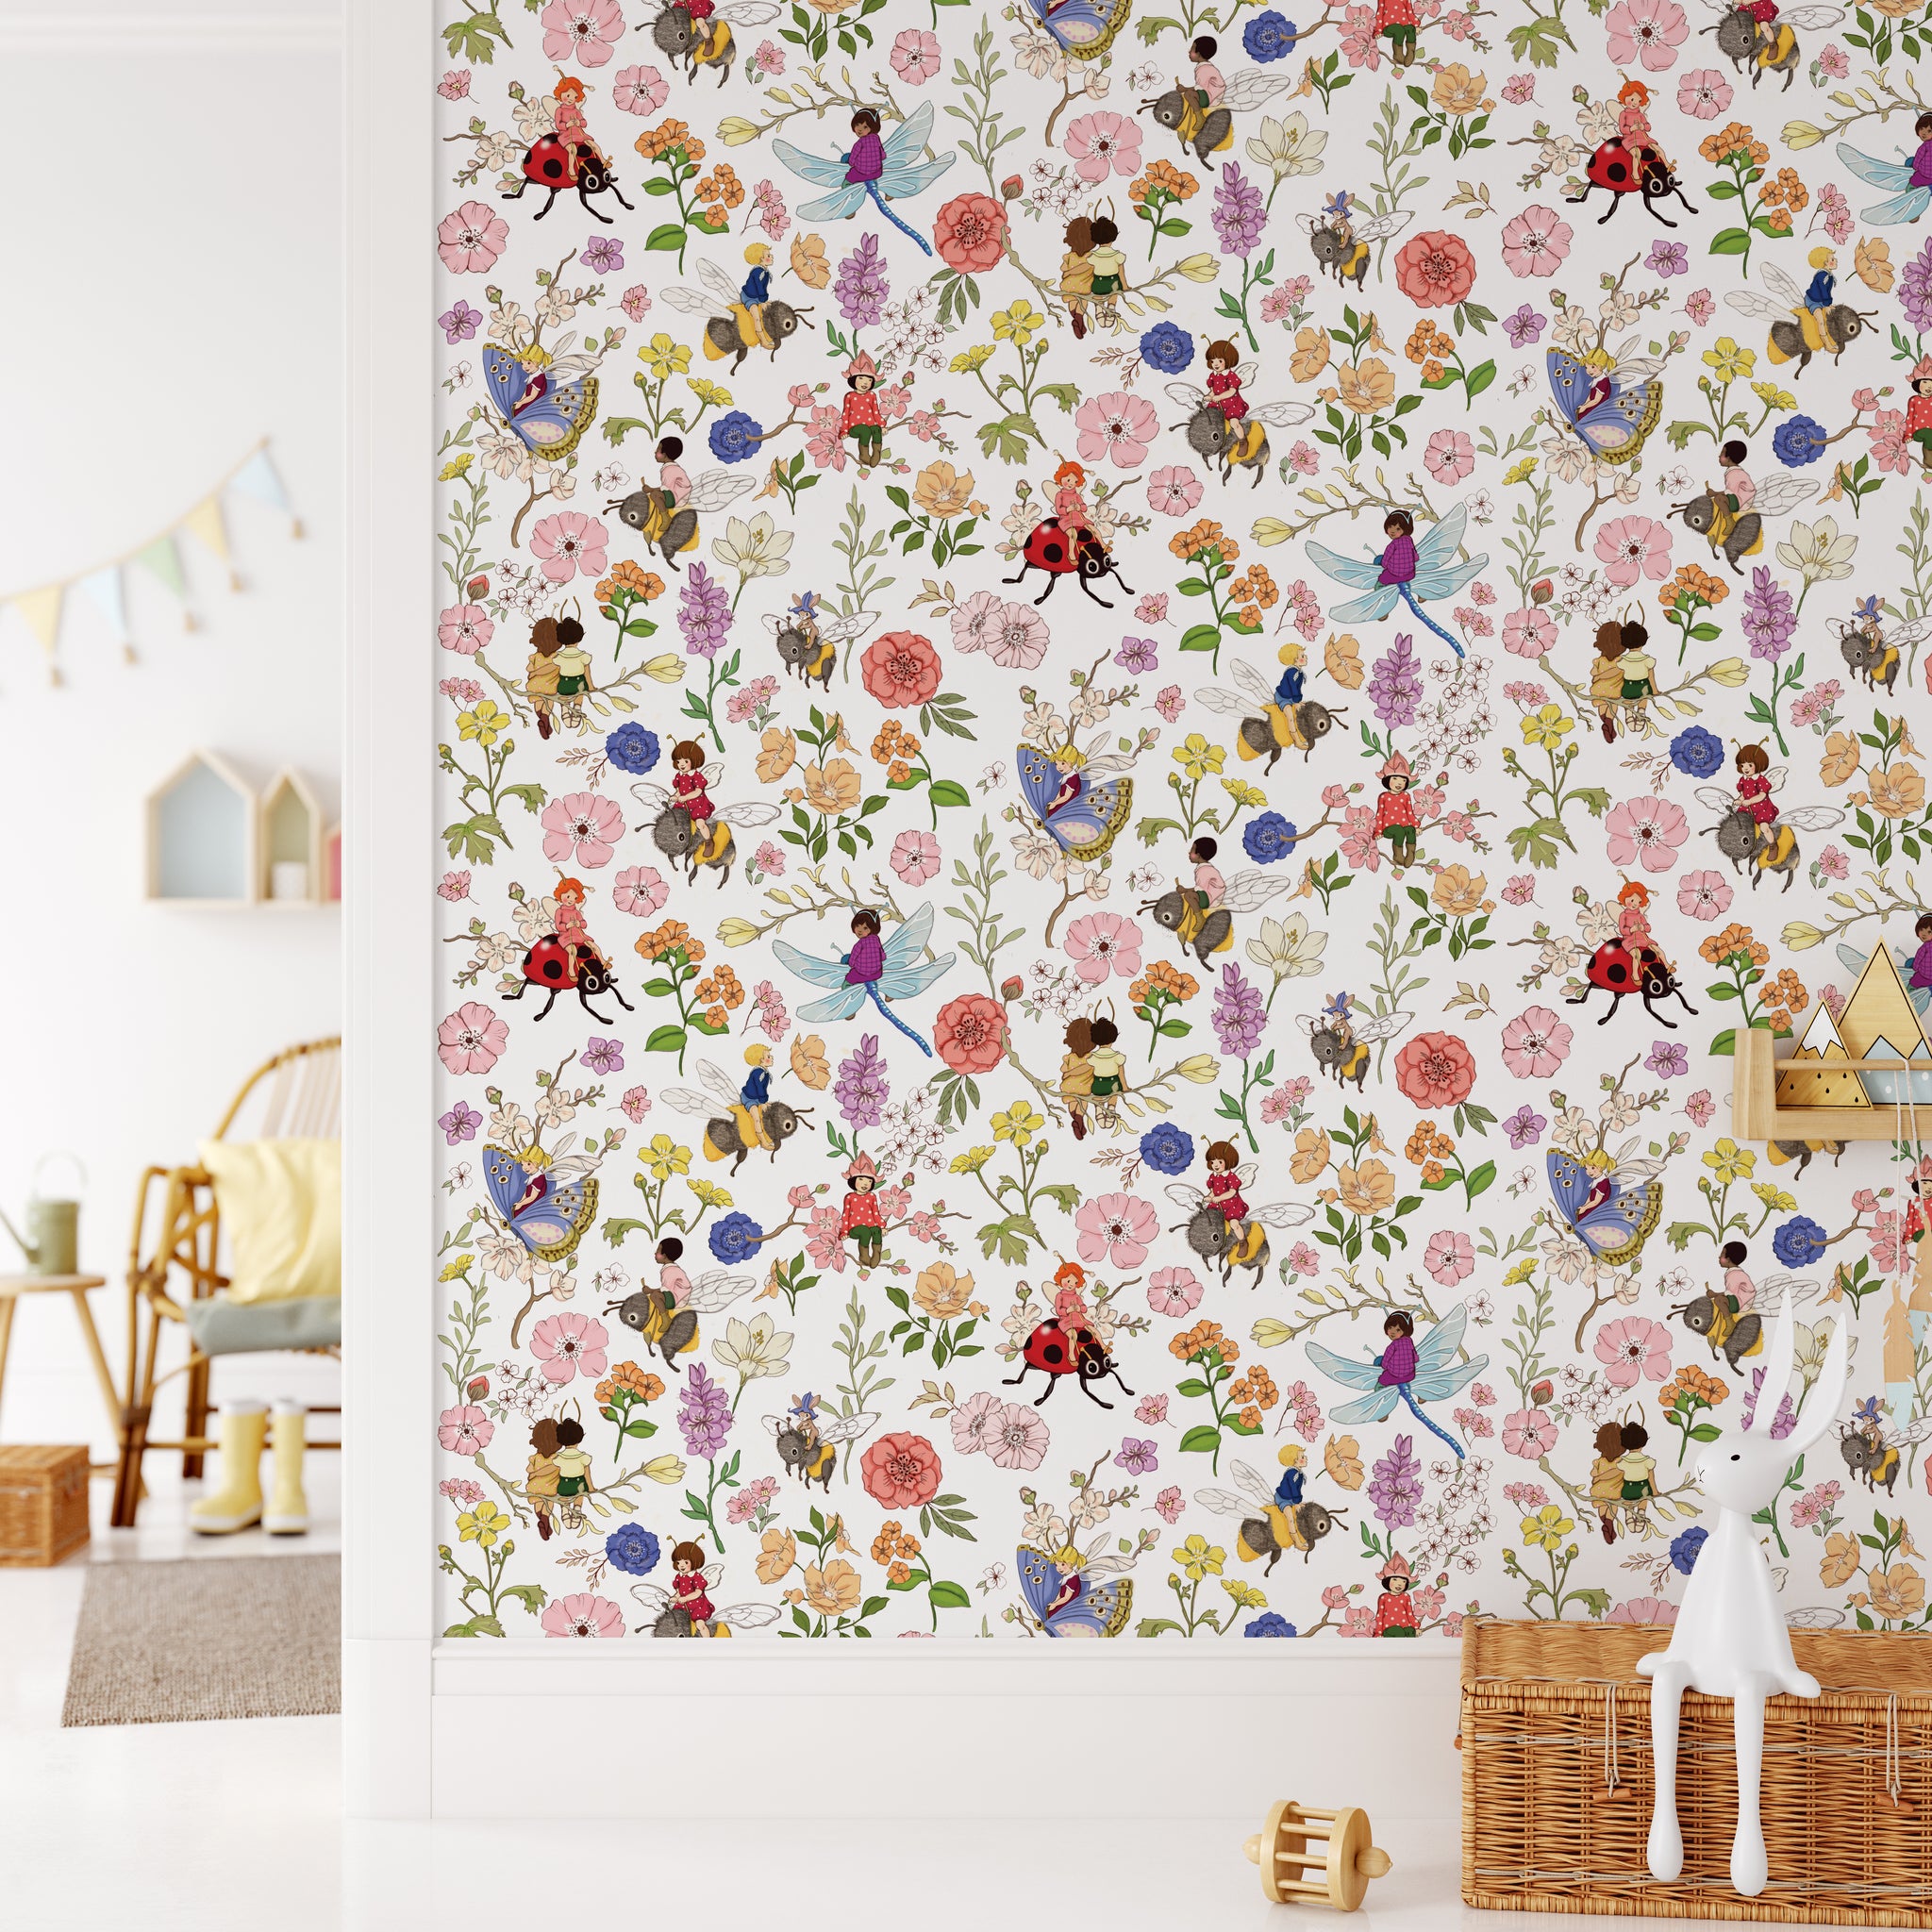 Pigtails Designer Matte Peel & Stick Wallpaper Panel - Bed Bath & Beyond -  32021565